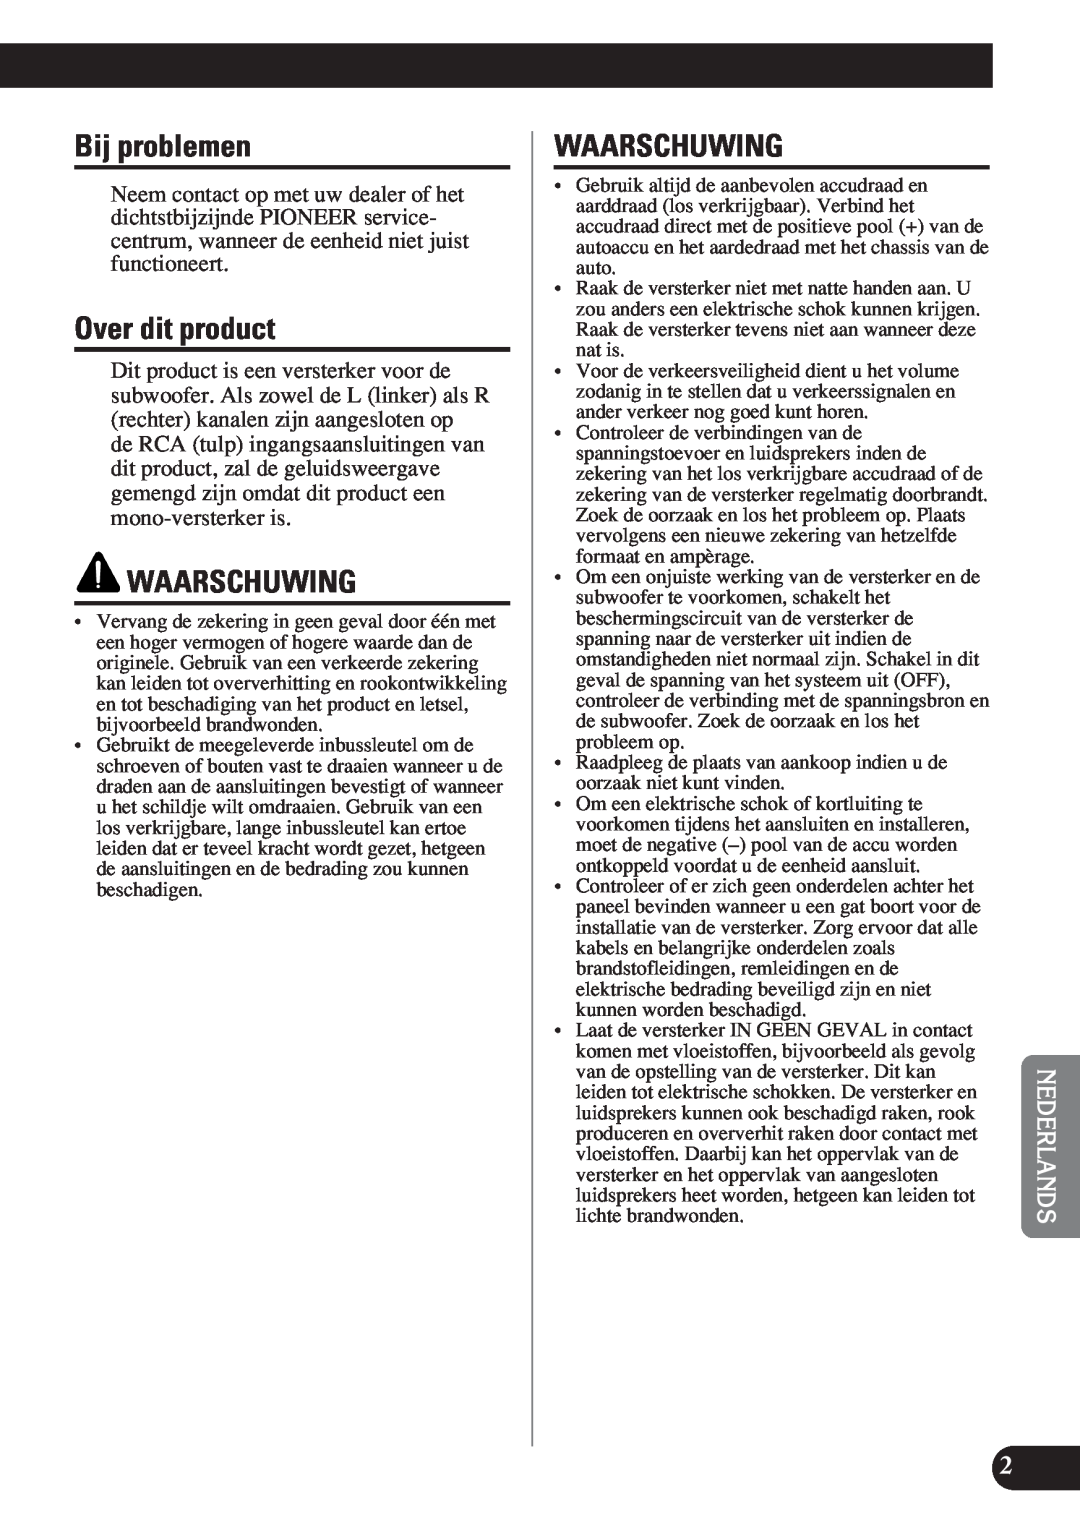 Pioneer D2000SPL owner manual Bij problemen, Over dit product, Waarschuwing 